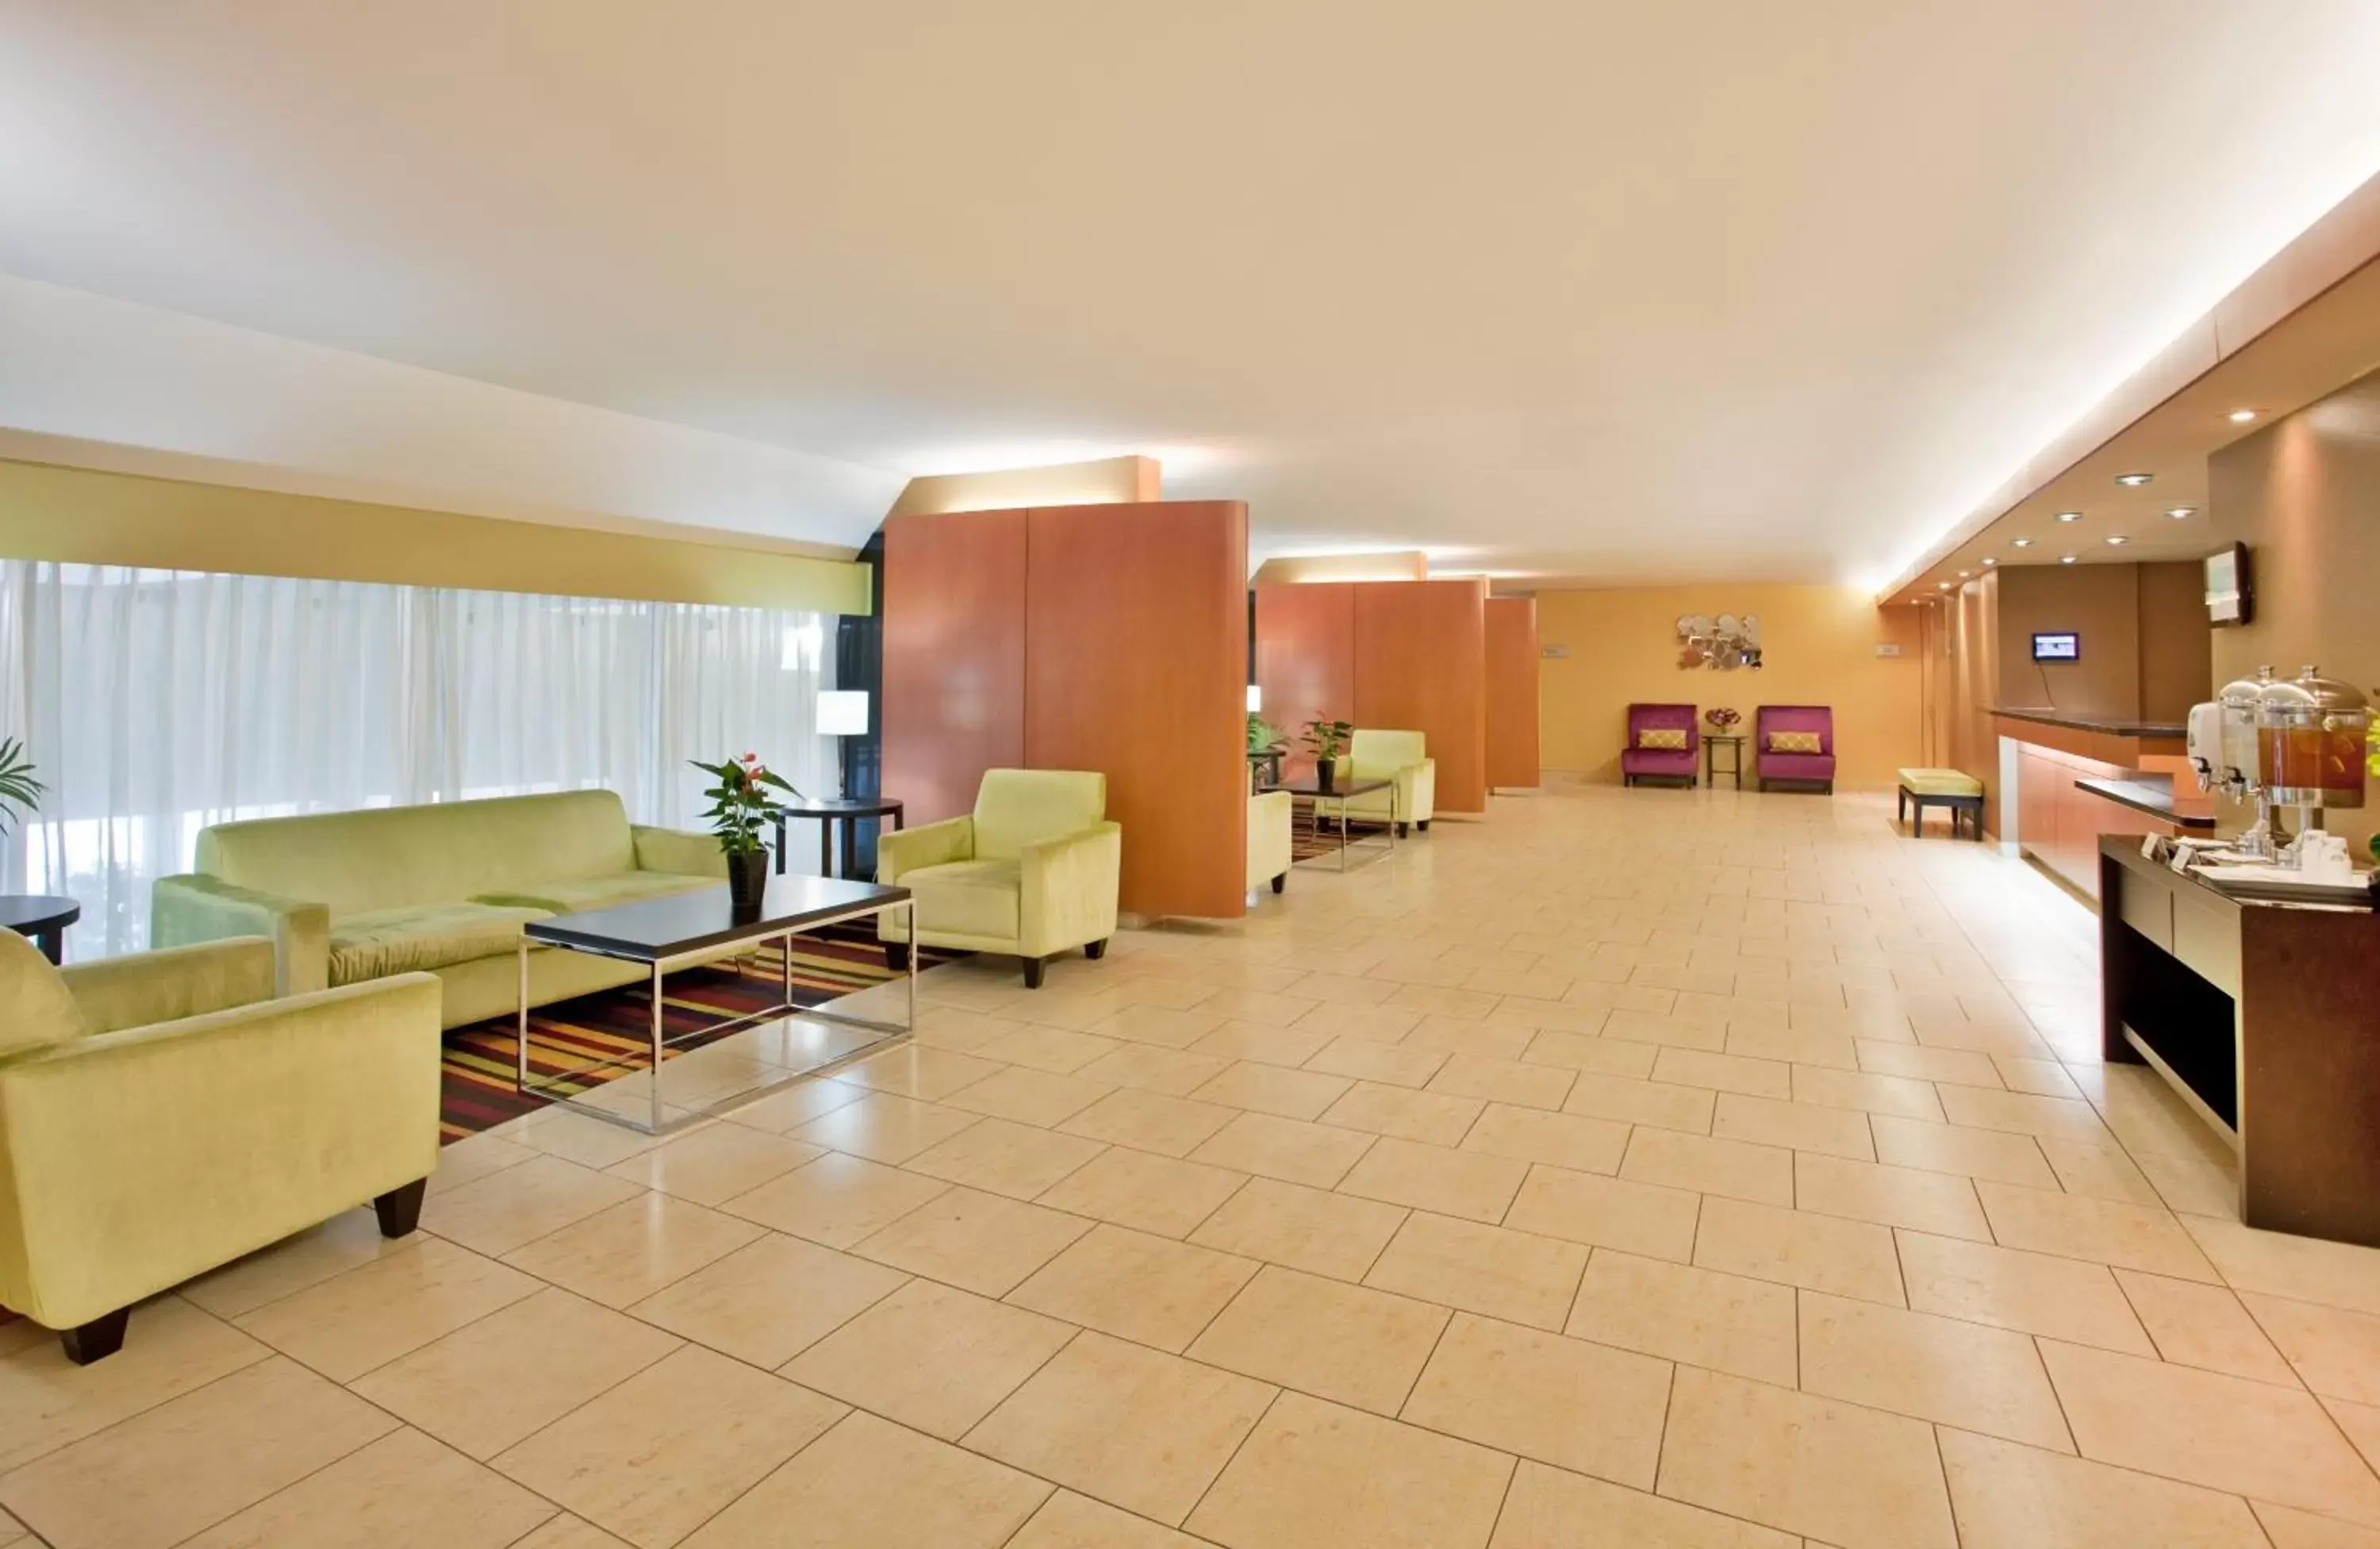 Lobby or reception in Radisson Hotel Sudbury